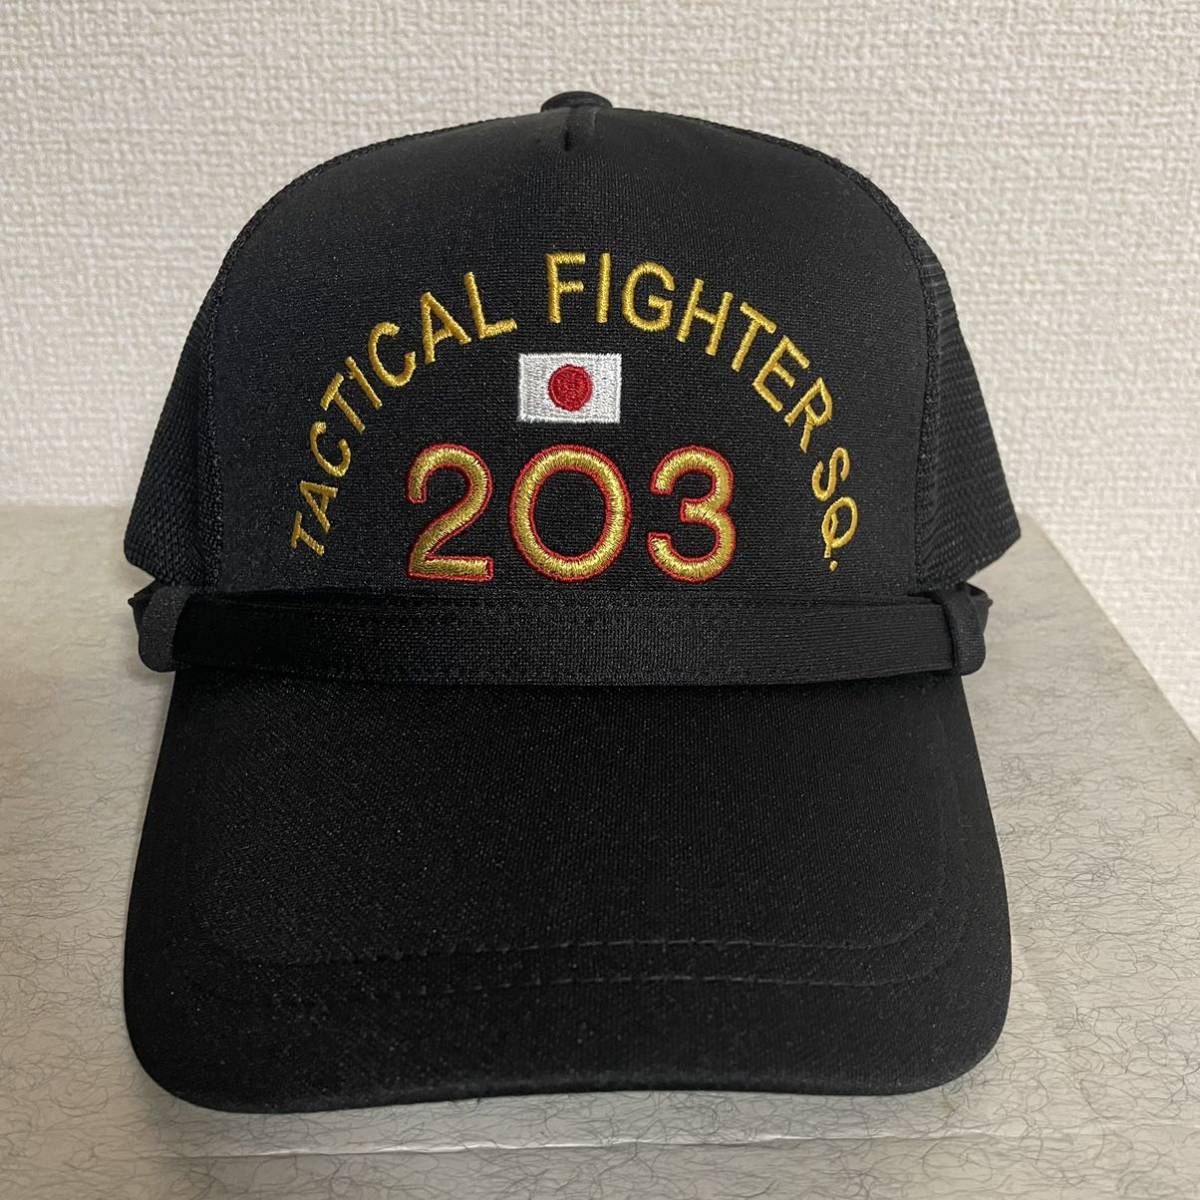 航空自衛隊 千歳基地第203飛行隊識別帽・部隊帽 キャップ